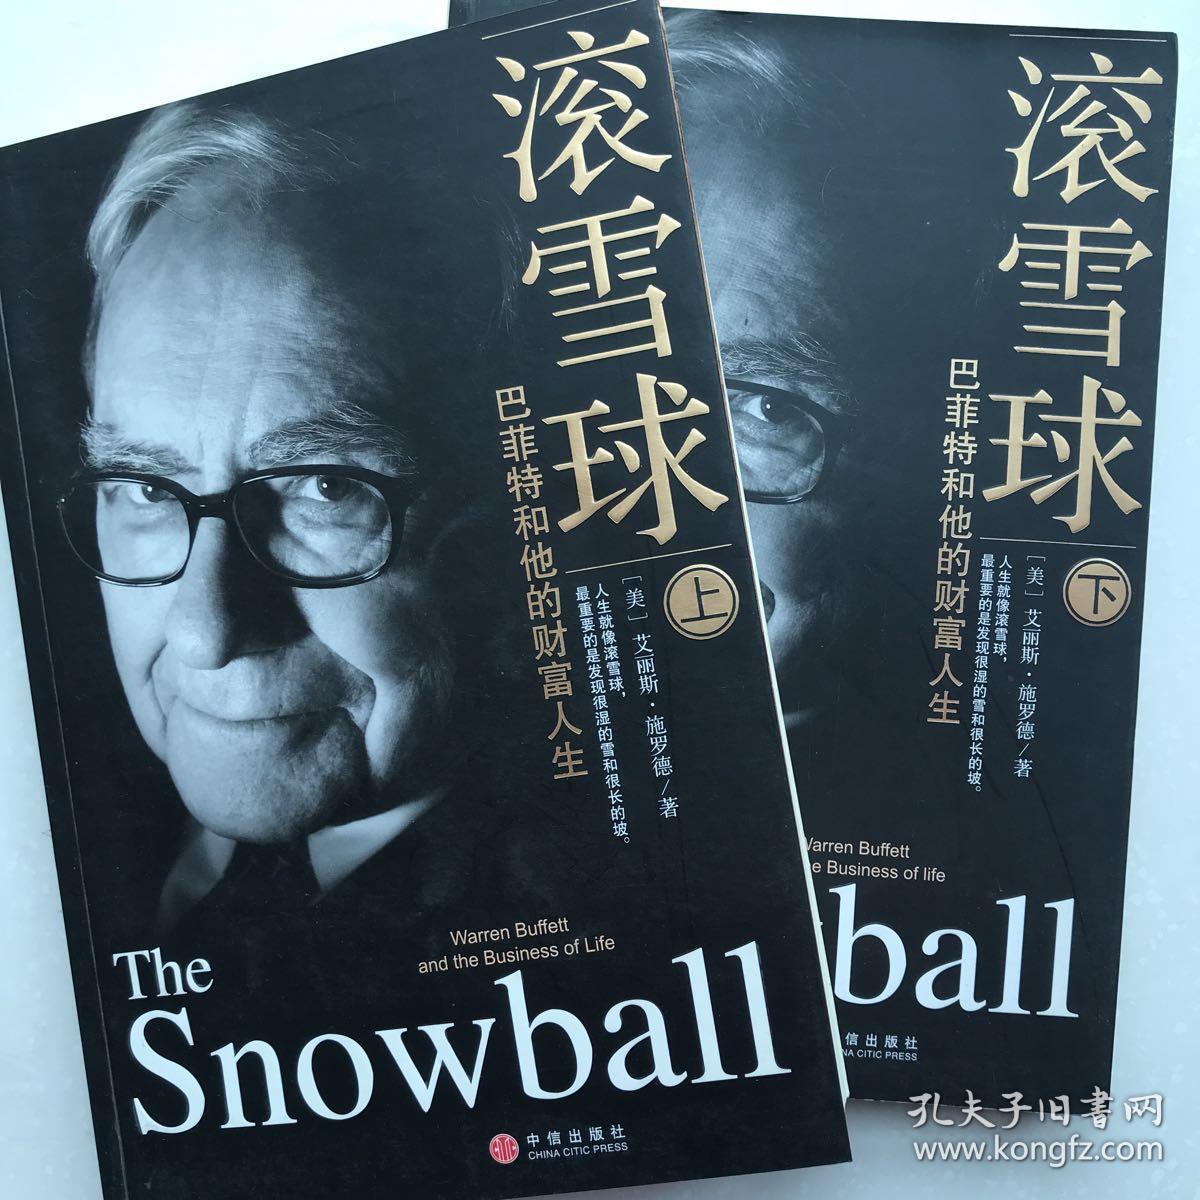 我喜欢你时的内心活动- cover 陈绮贞-卖雪球的-卖雪球的-哔哩哔哩视频